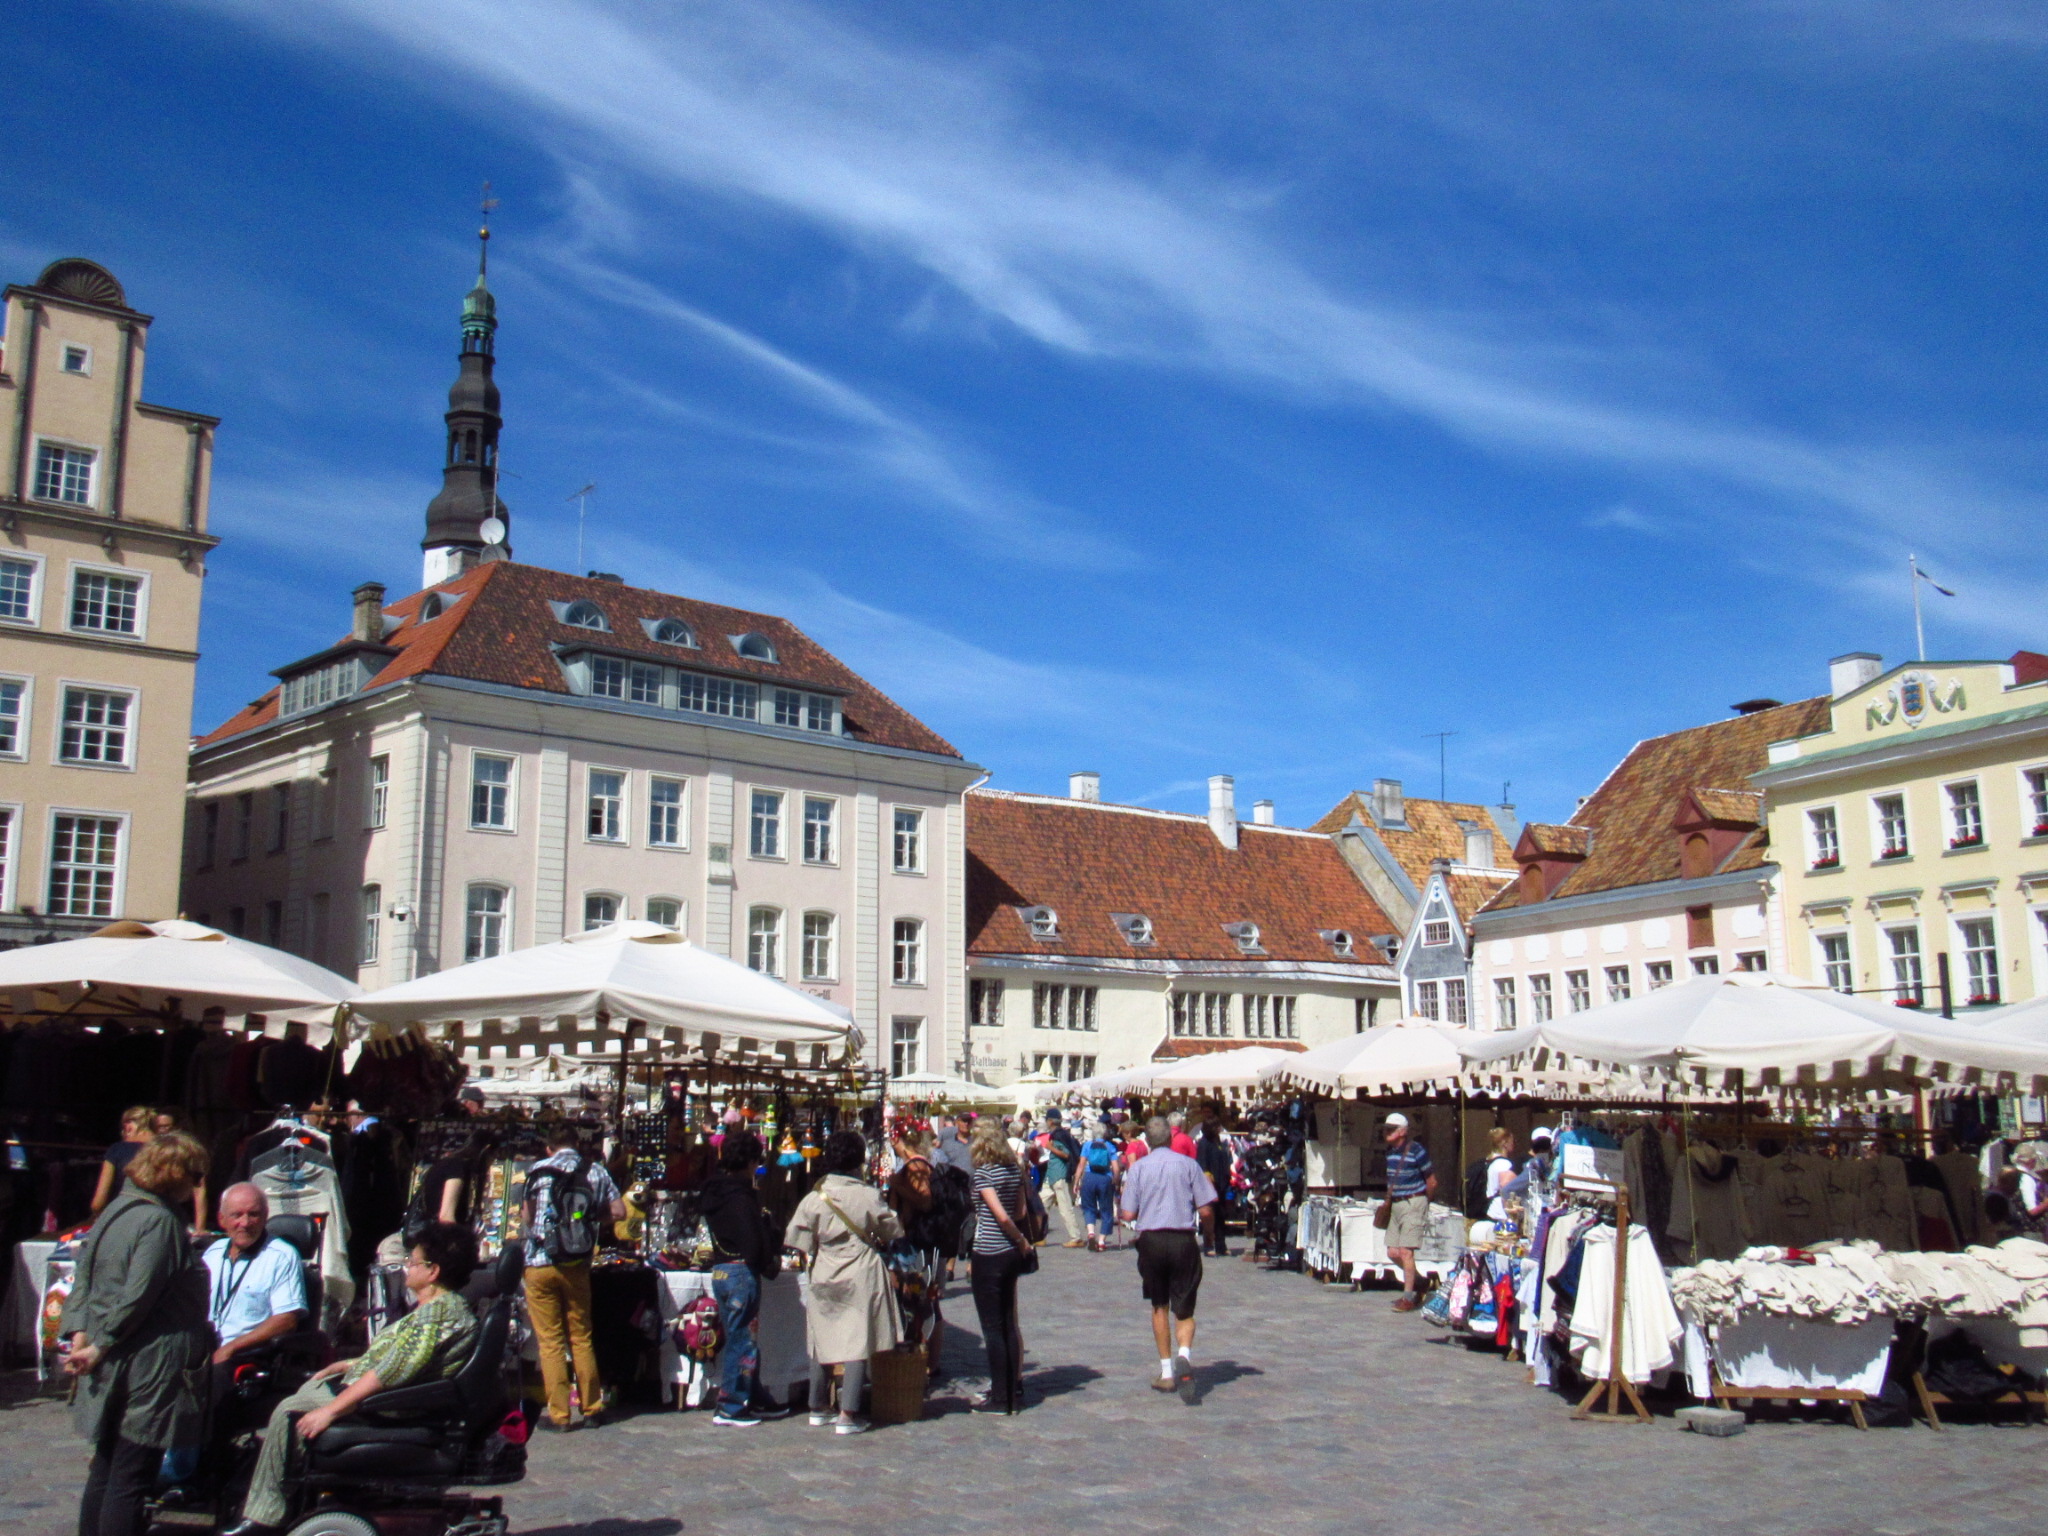 Market square. Tallinn